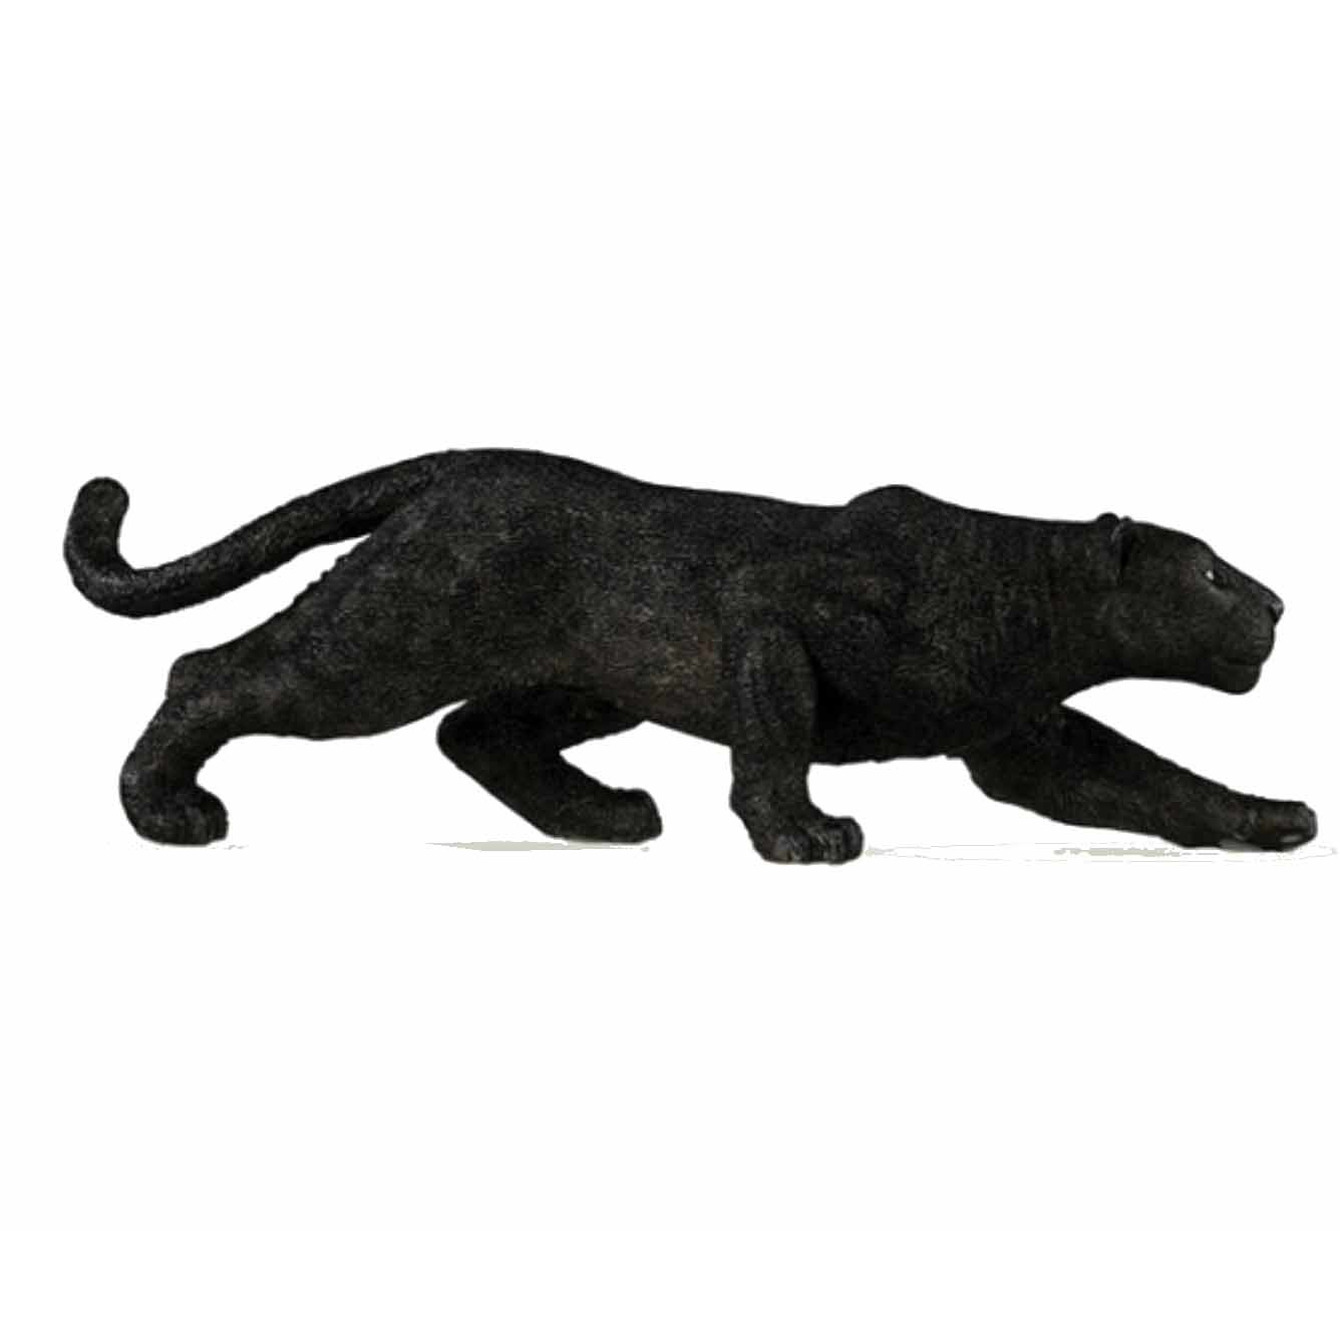 Afbeelding Zwarte panter speeldiertje 14 cm door Animals Giftshop